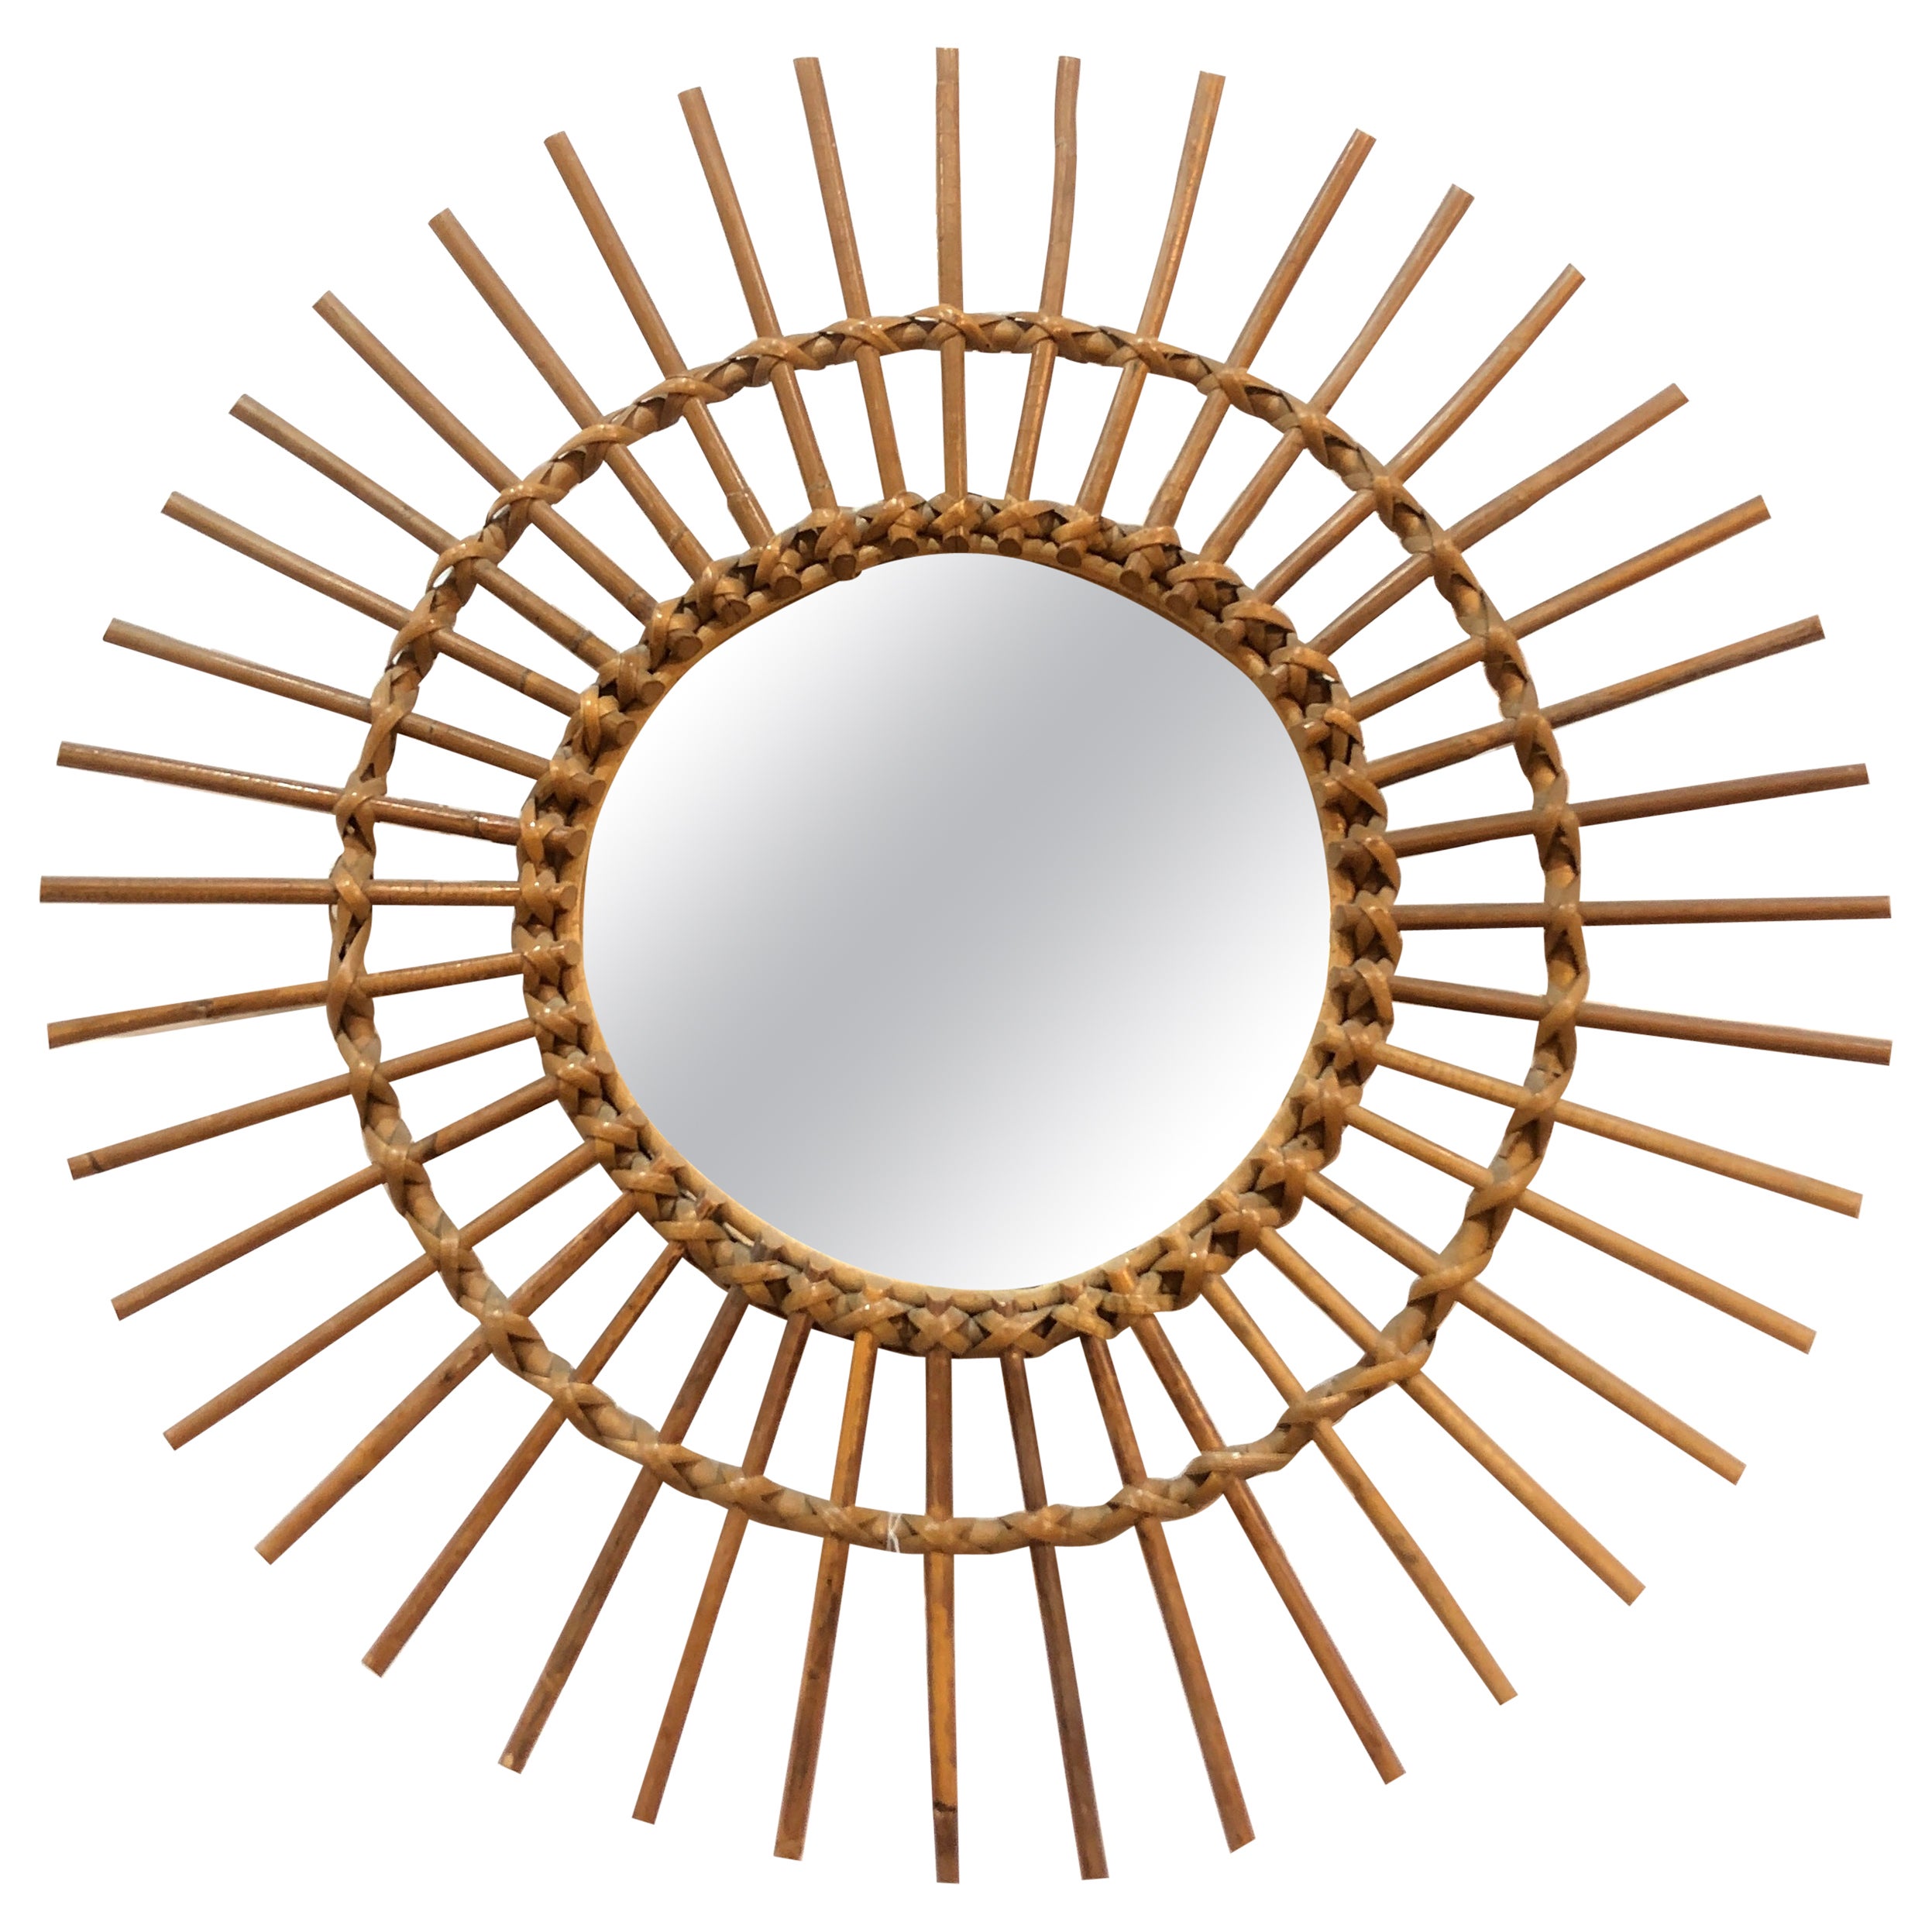 1960's Italian Sunburst Bamboo / Rattan Wall Mirror.